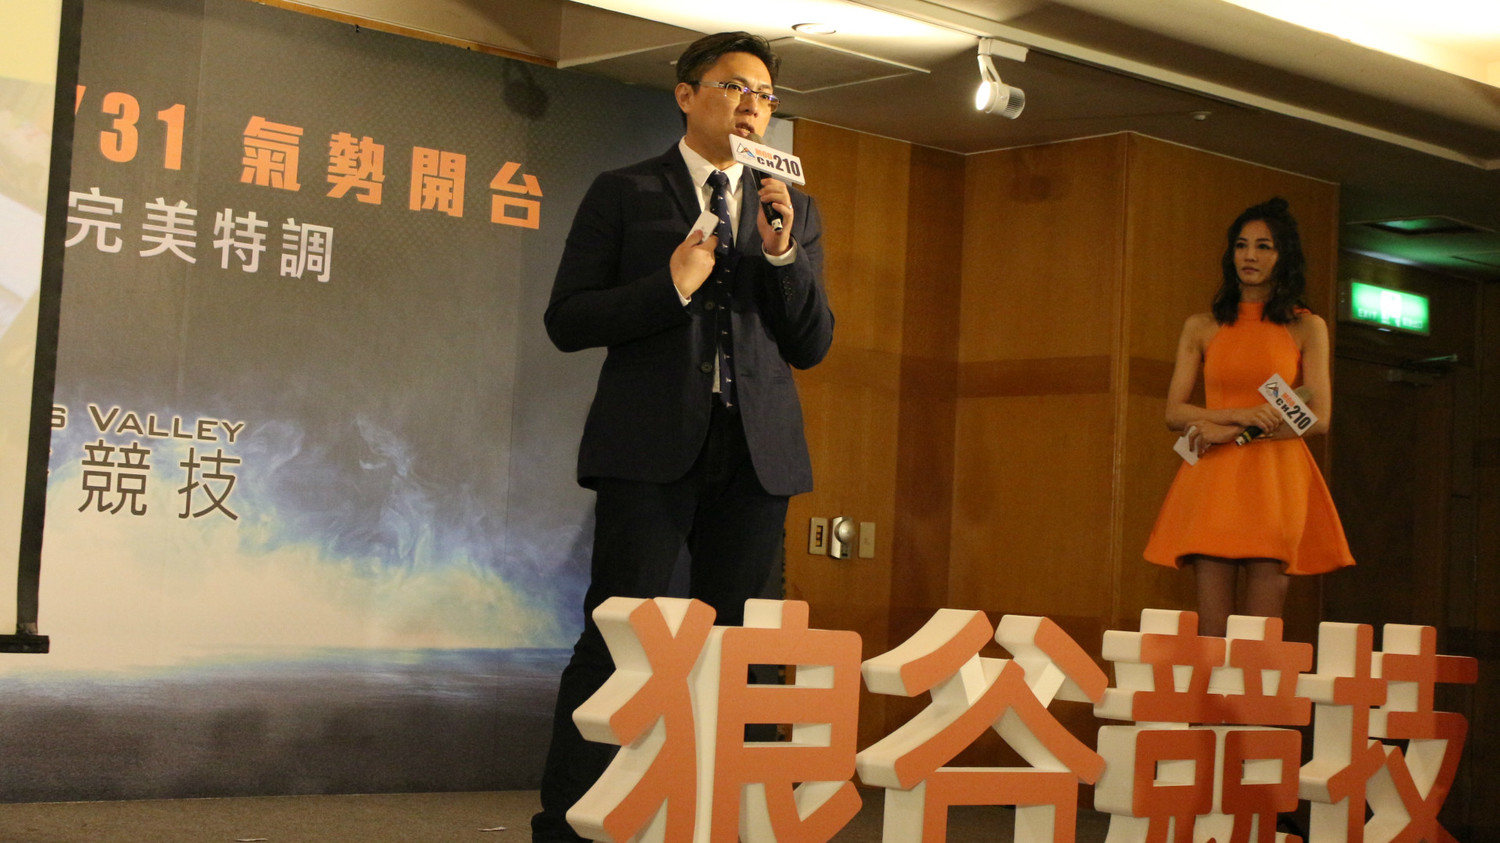 狼谷競技台2018年正式開播，成為台灣史上第一座以電競為節目核心的電視台。圖為時任狼谷競技台總經理黃俊仁。